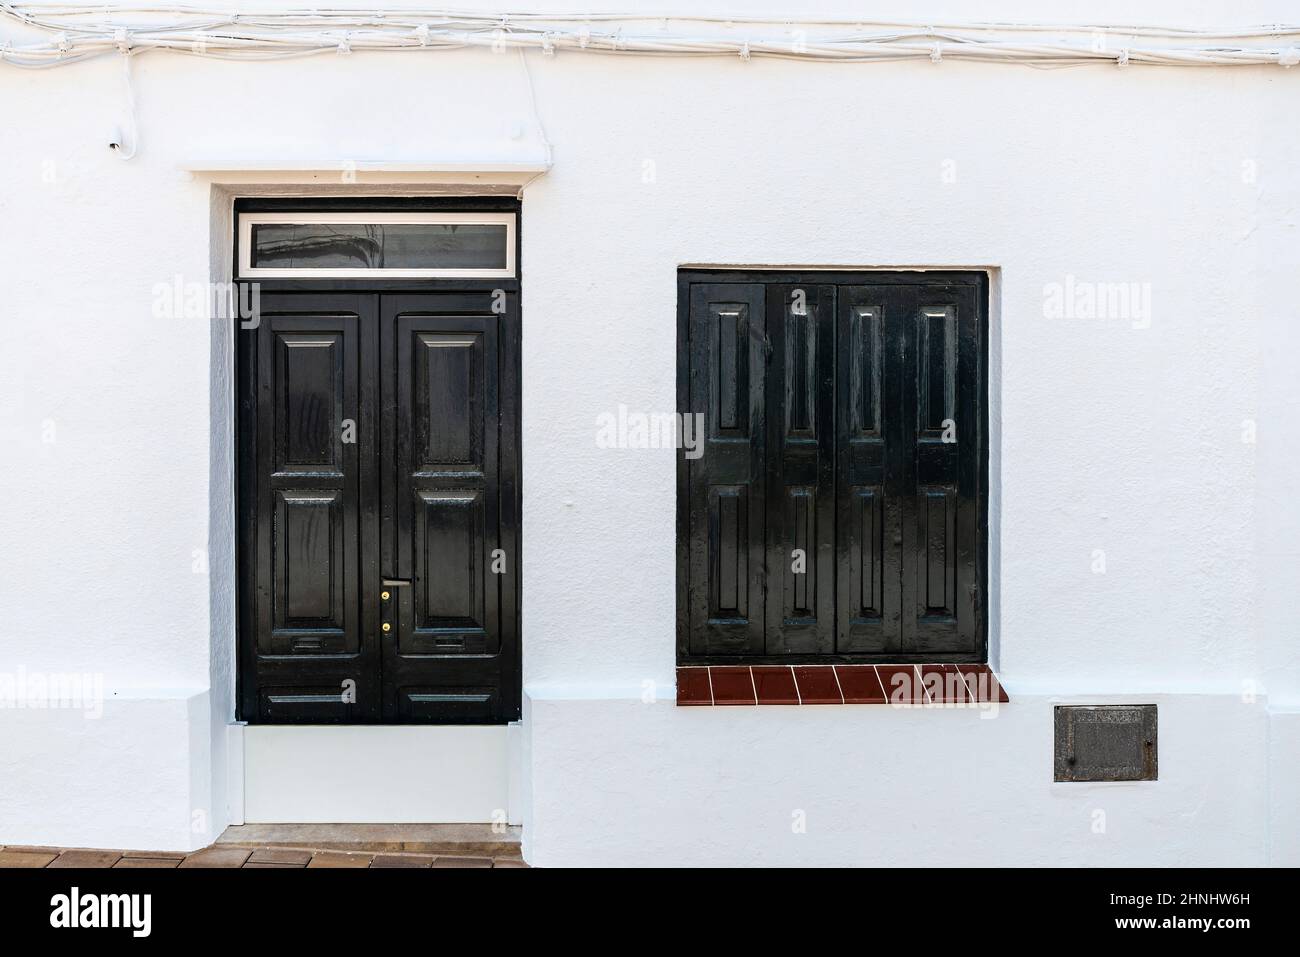 Casa bianca nel villaggio di Fornells in estate a Minorca, Isole Baleari, Spagna Foto Stock